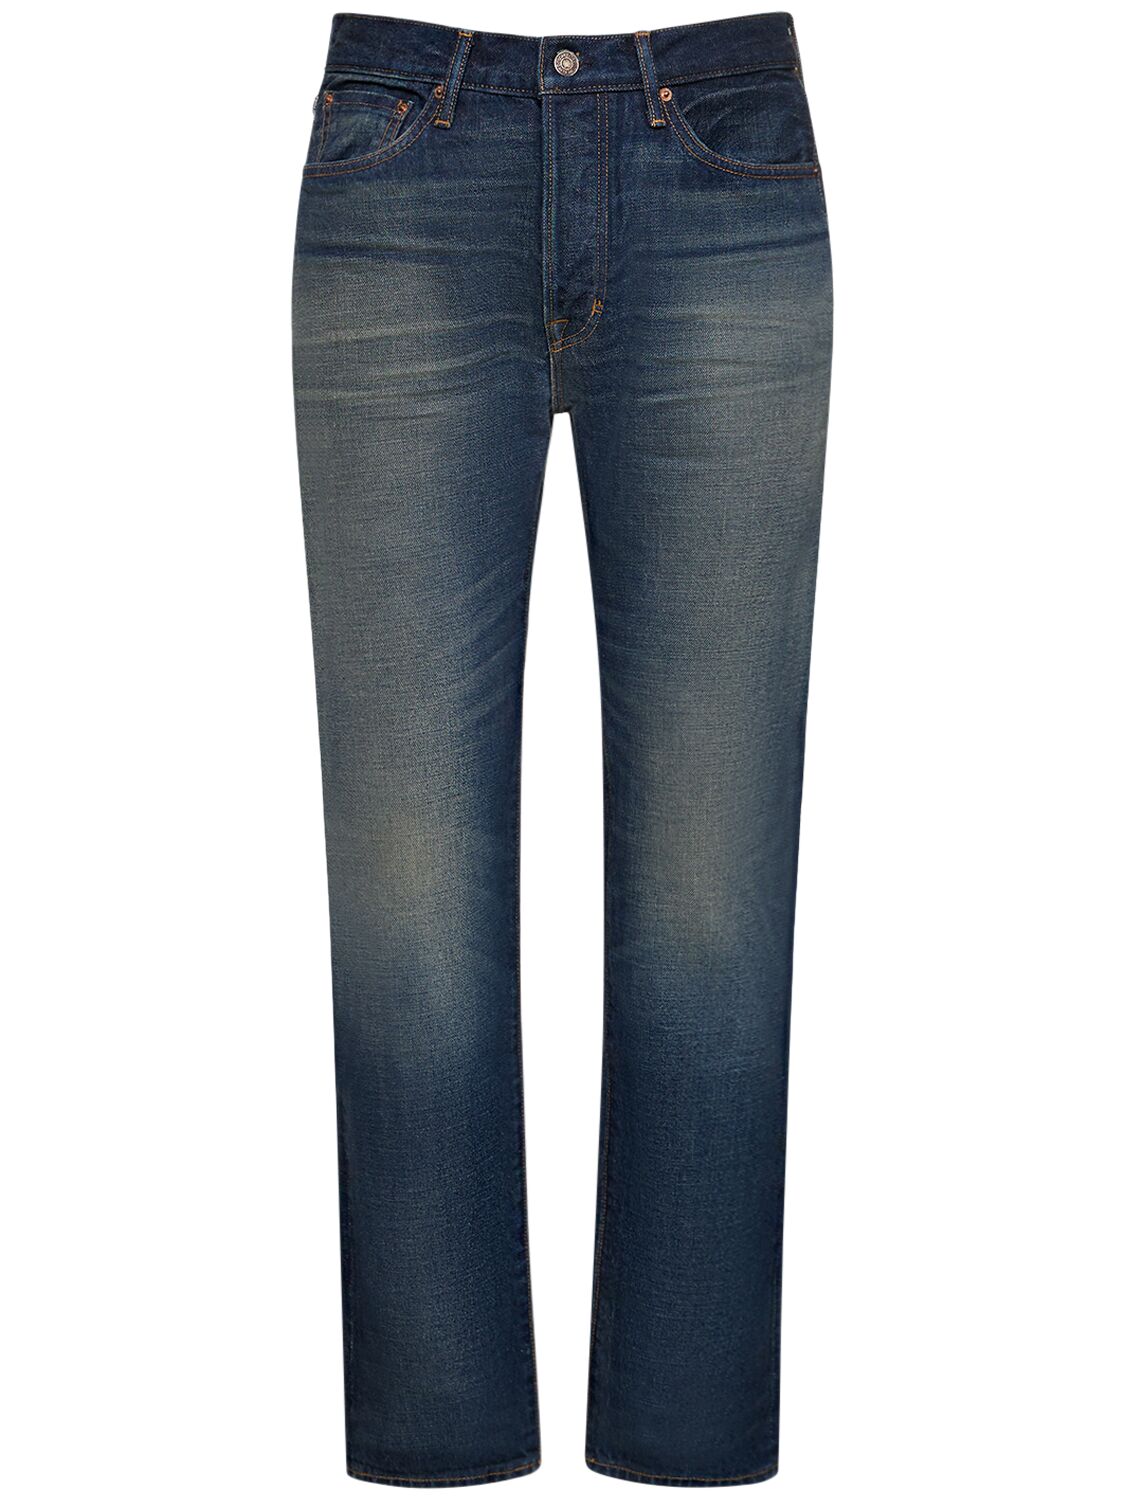 Image of Standard Fit Denim Jeans